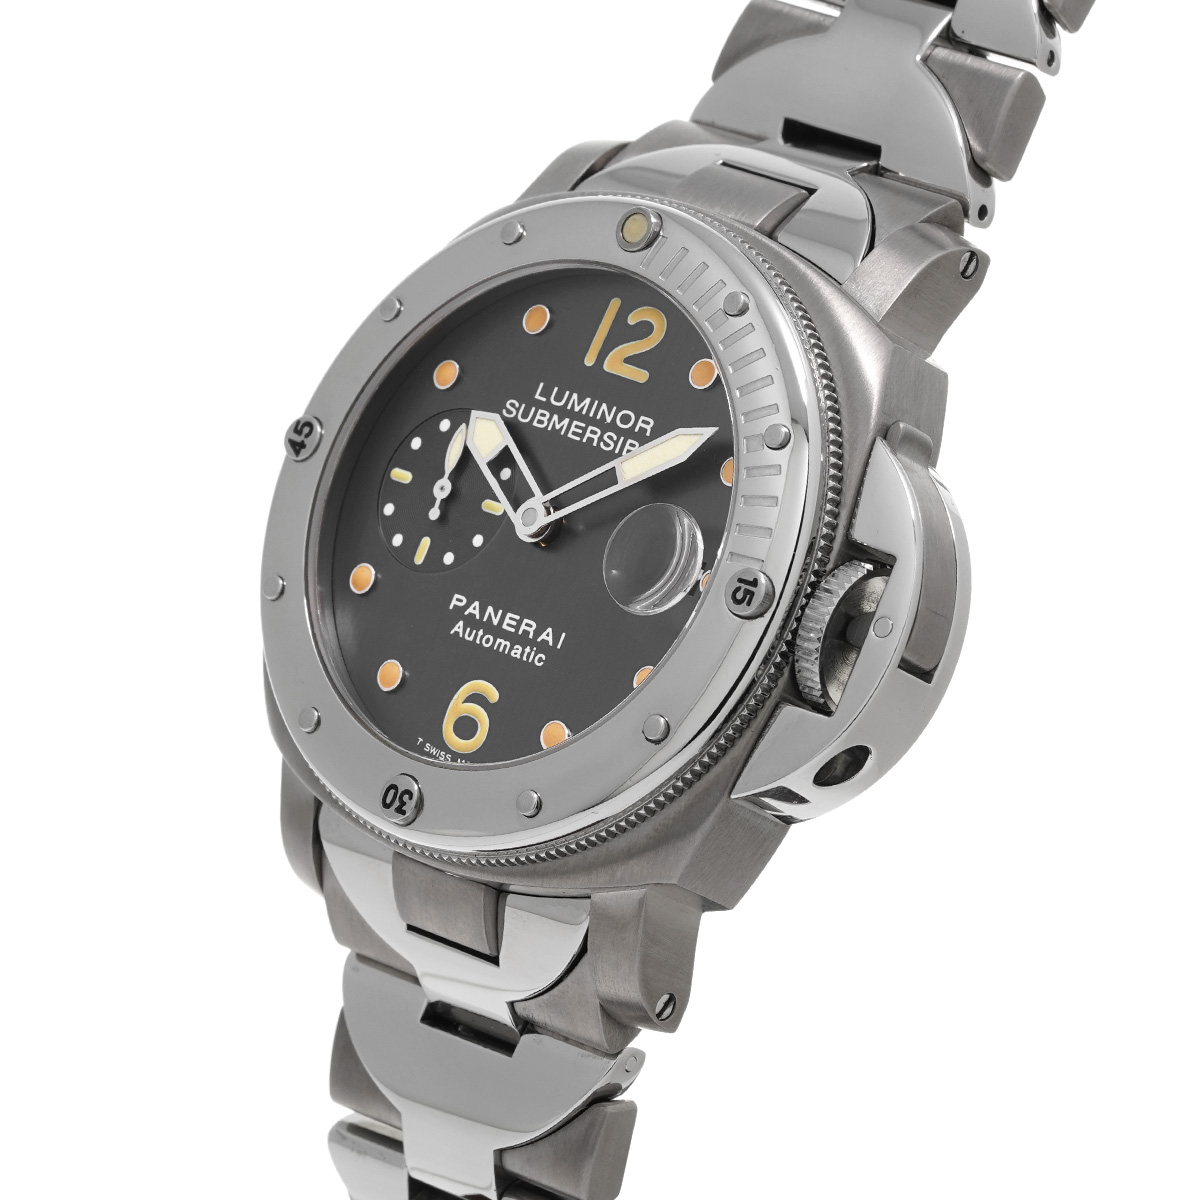 パネライ / PANERAI ルミノール サブマーシブル PAM00170 グレー メンズ 時計 【中古】【wristwatch】